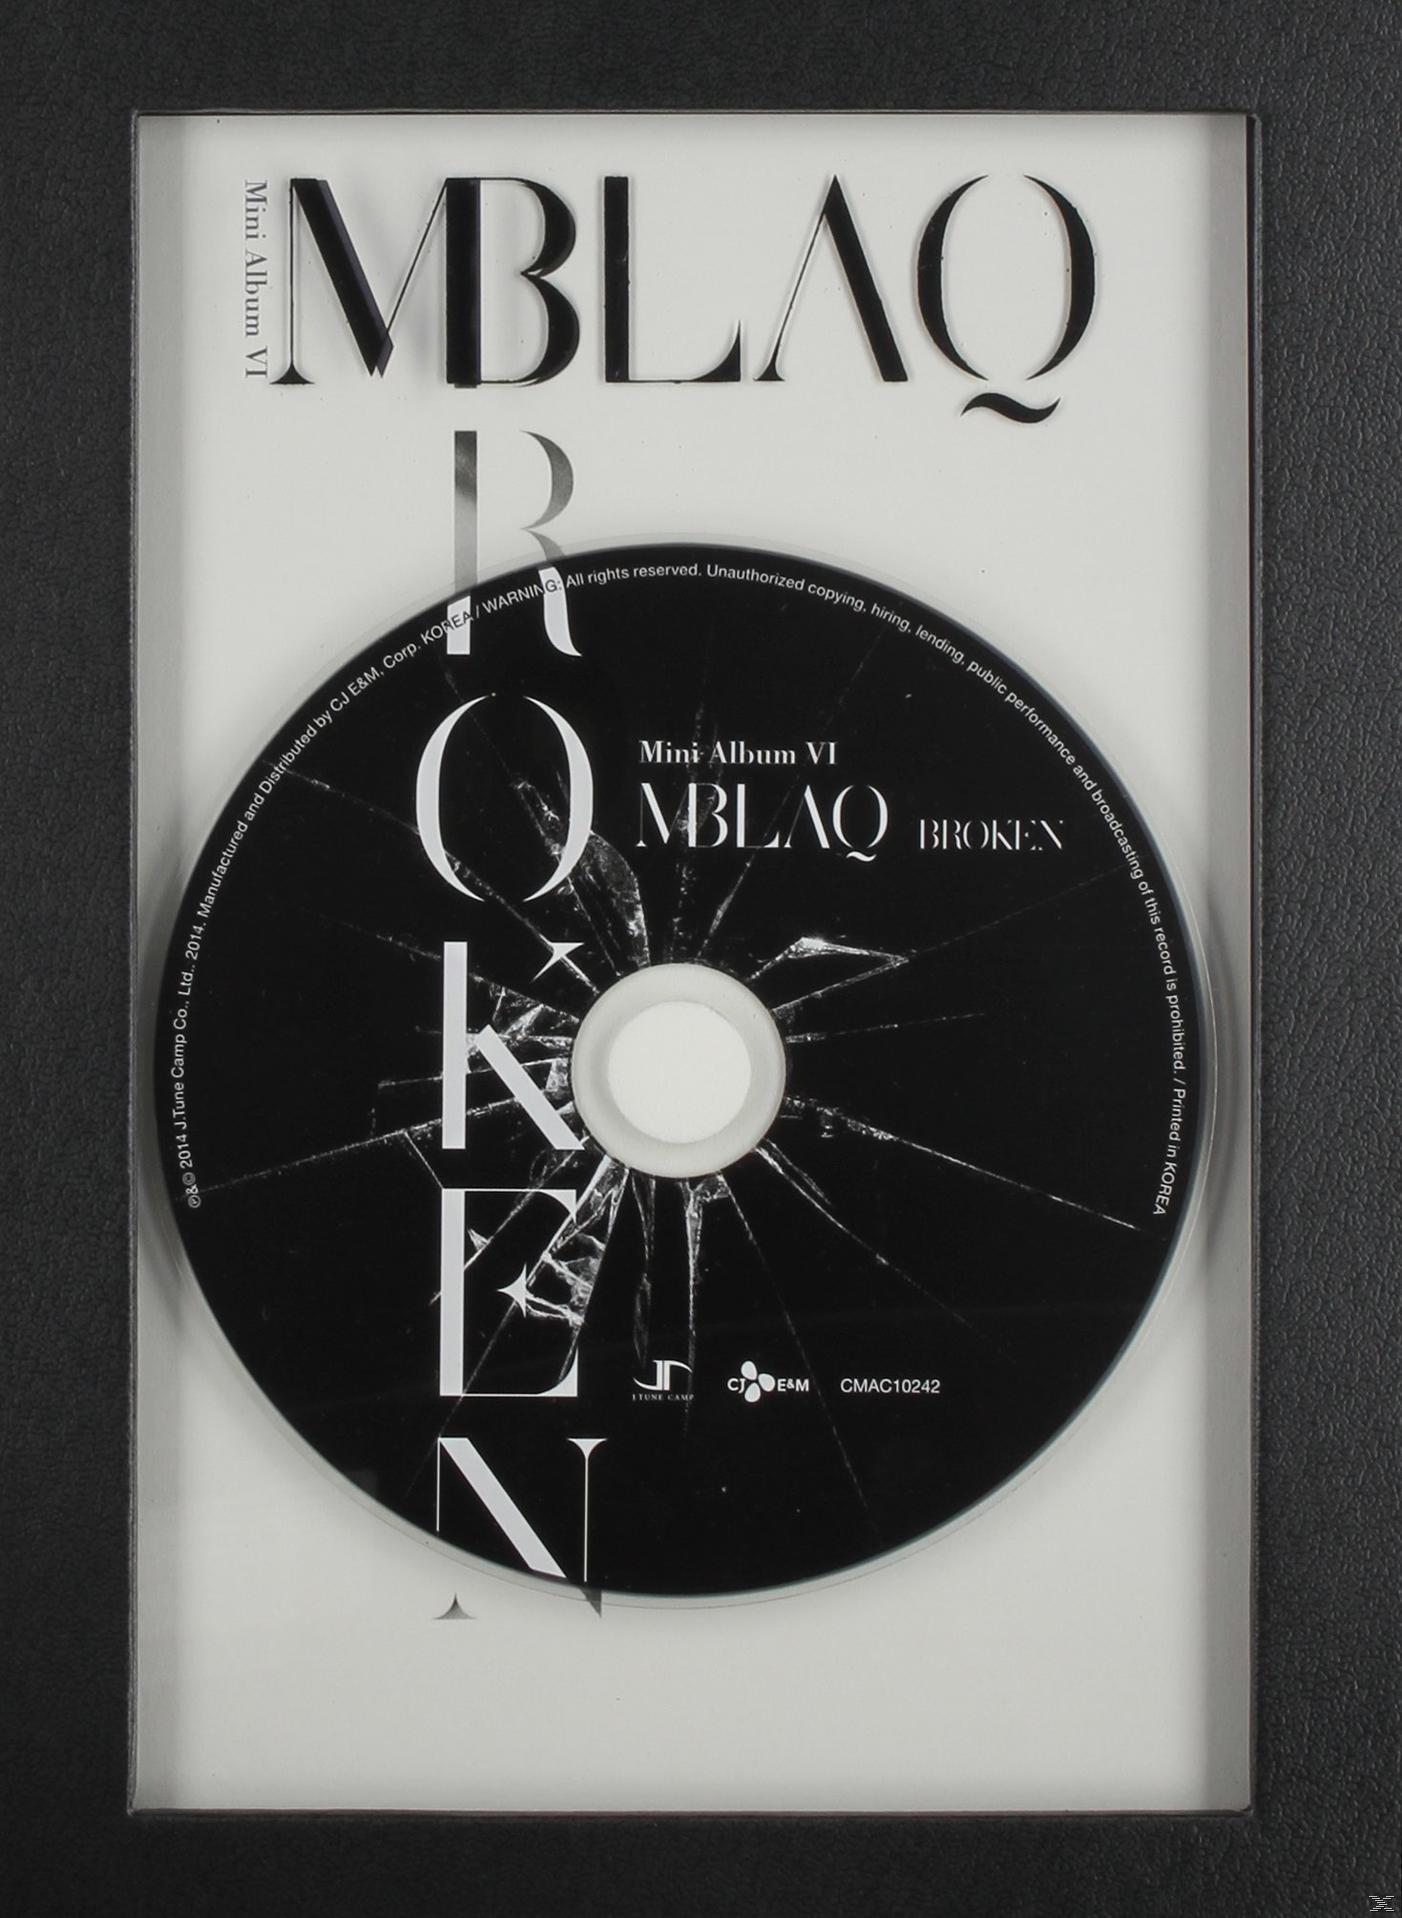 Mblaq - Broken - (CD)